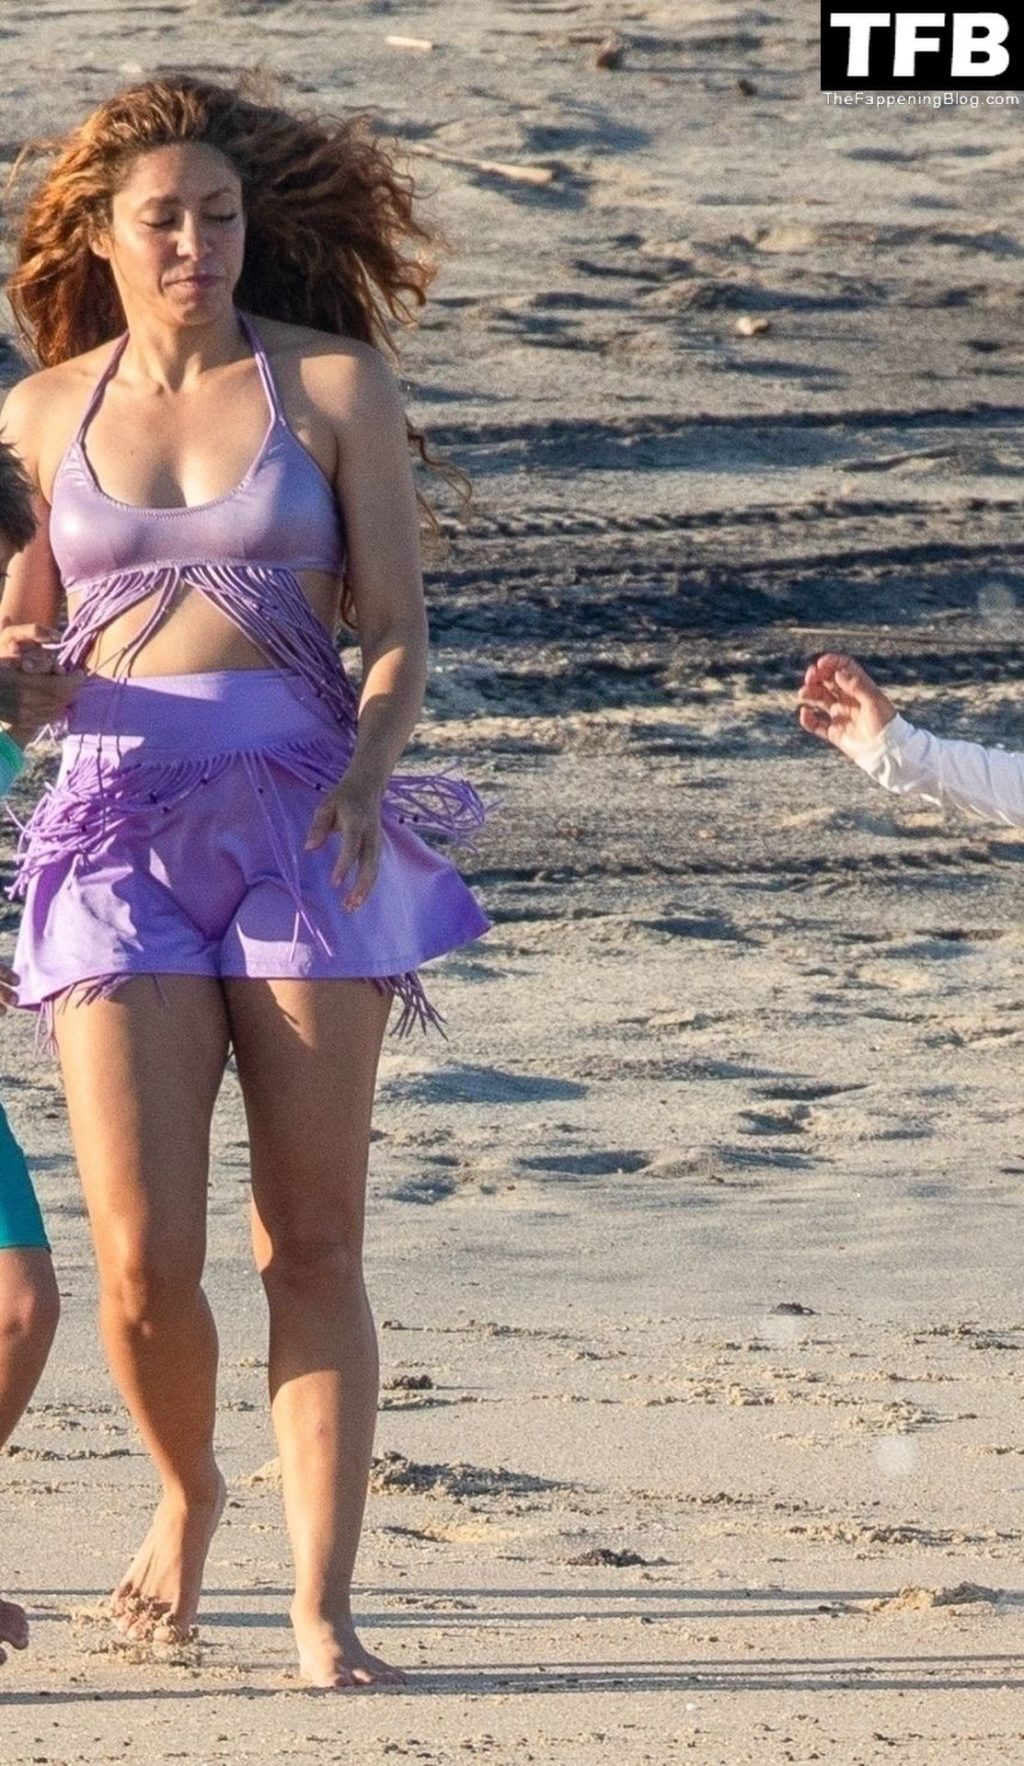 Shakira Has Some Fun on the Beach in Cabo San Lucas (27 Photos)